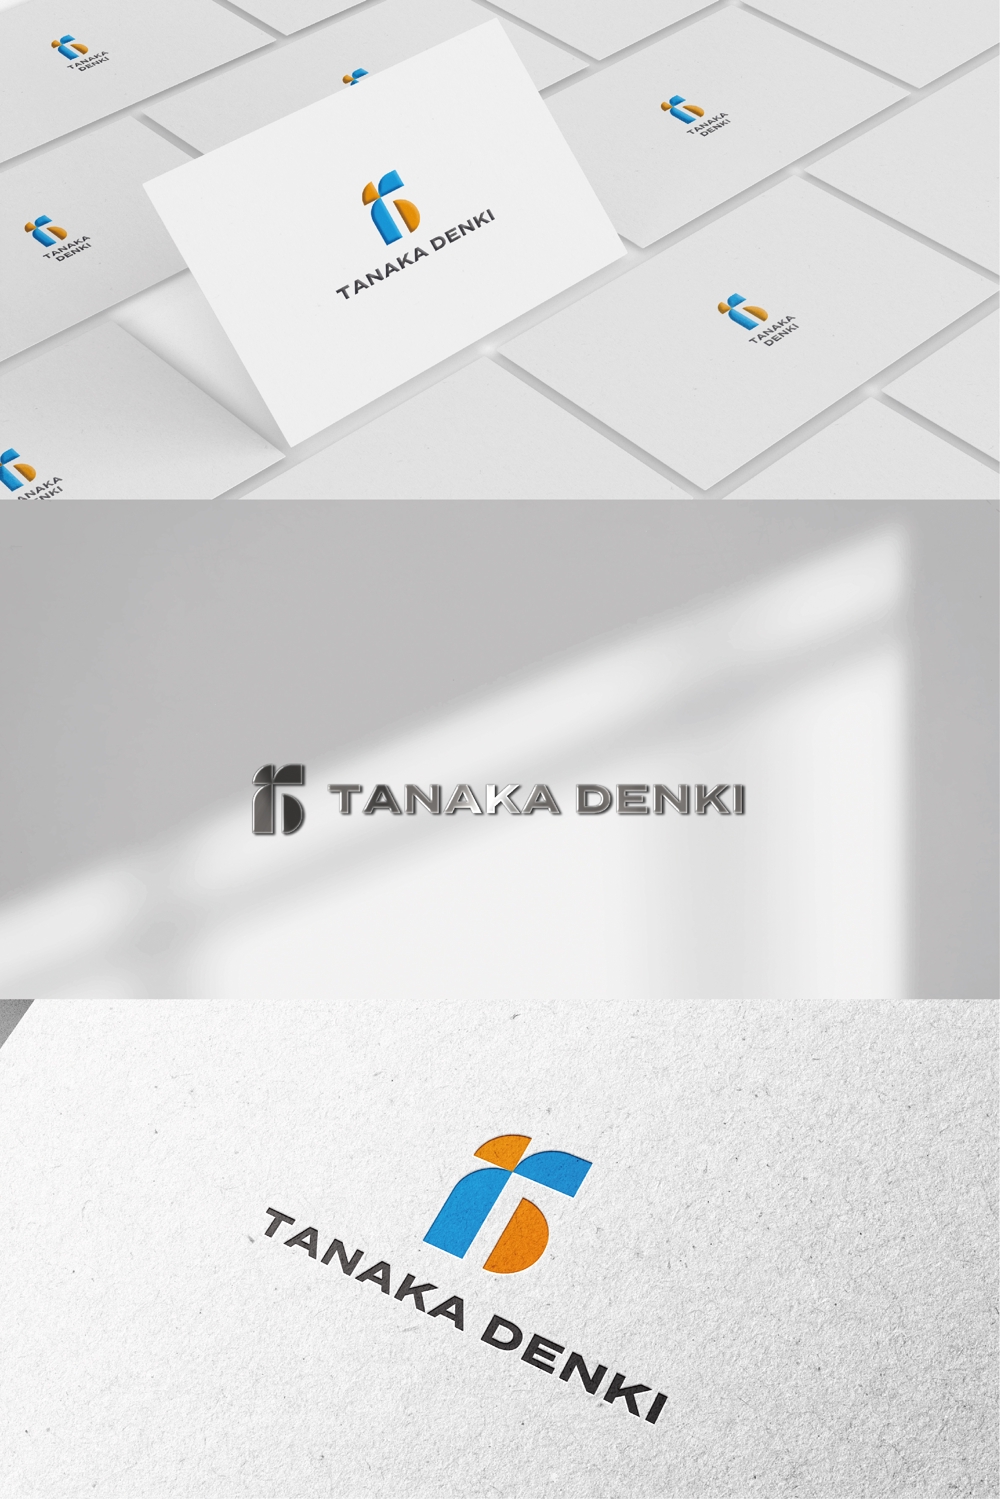 田中電気株式会社の企業のロゴ